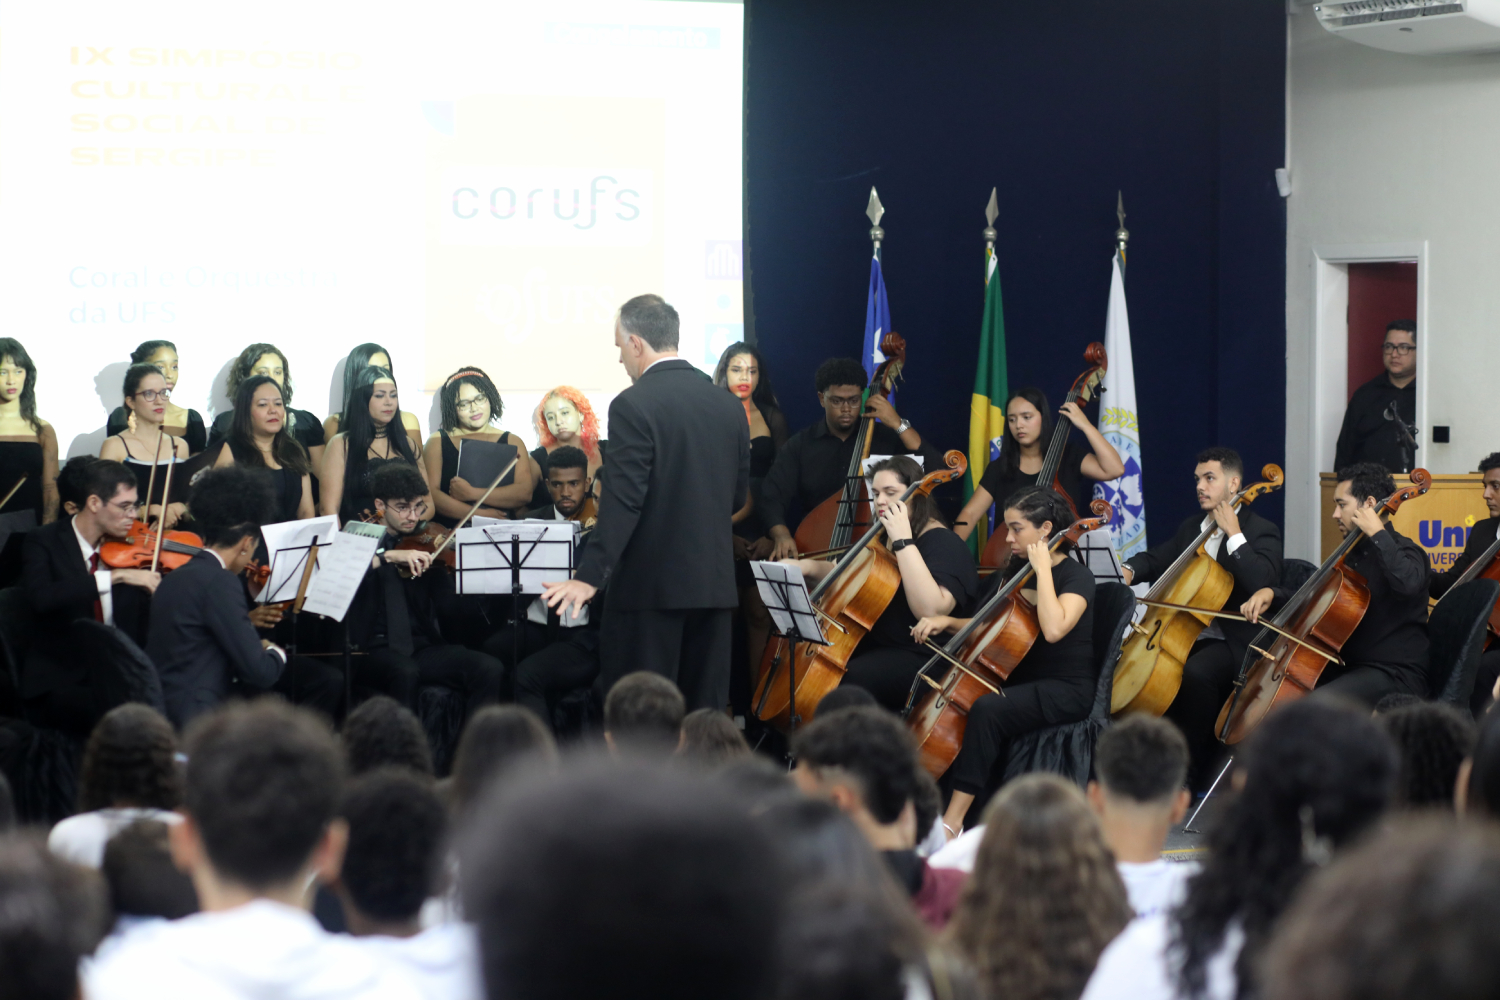 CORUFS e OSUFS foram premiados no IX Simpósio Cultural e Social de Sergipe. (Foto: Schirlene Reis/Ascom UFS)